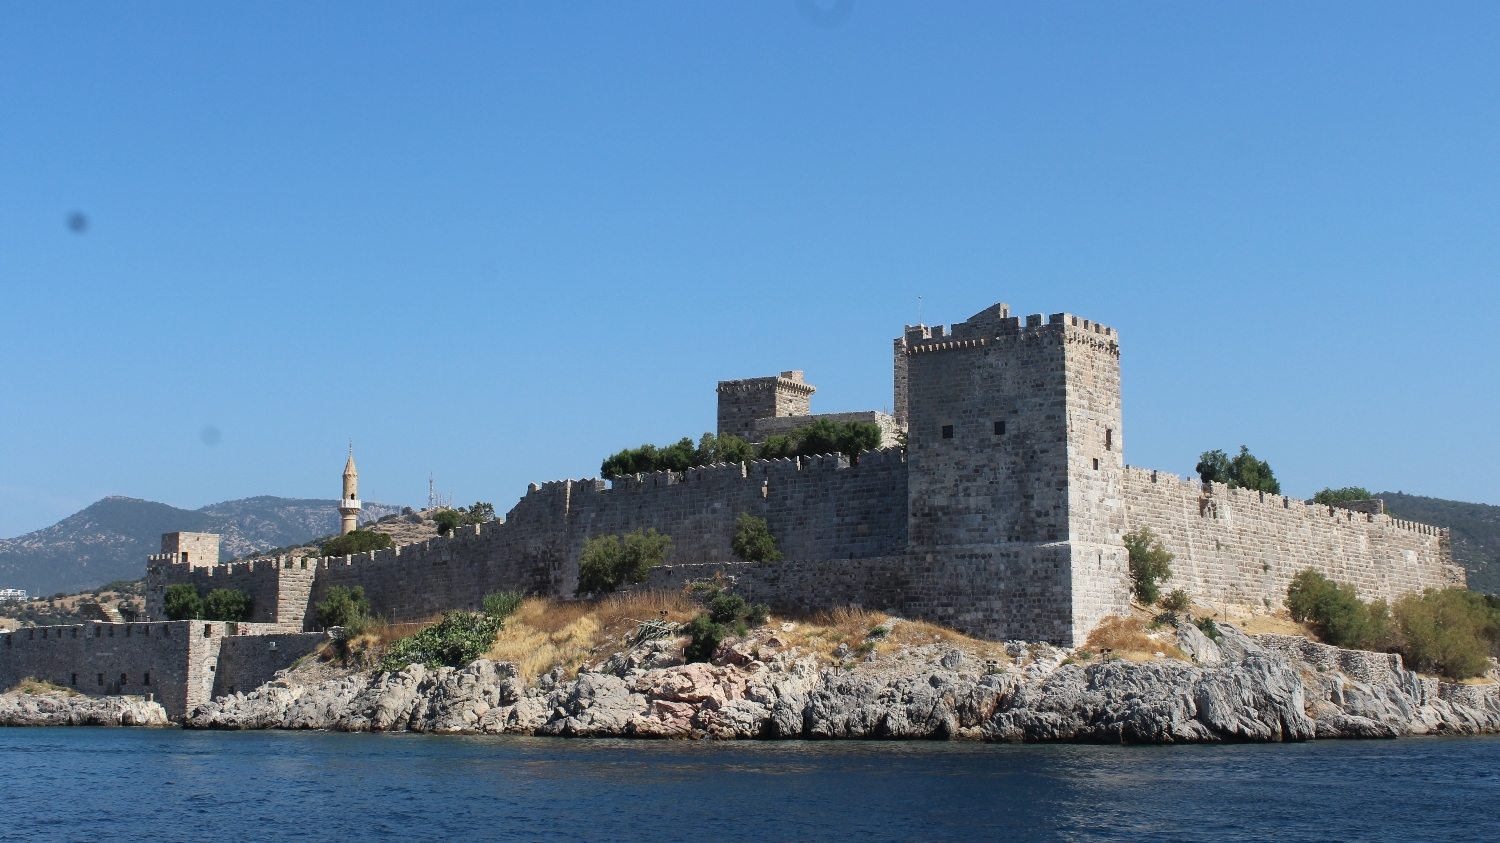 The Castle of San Pedro de Halicarnassus of Bodrum bordered from the schooner.